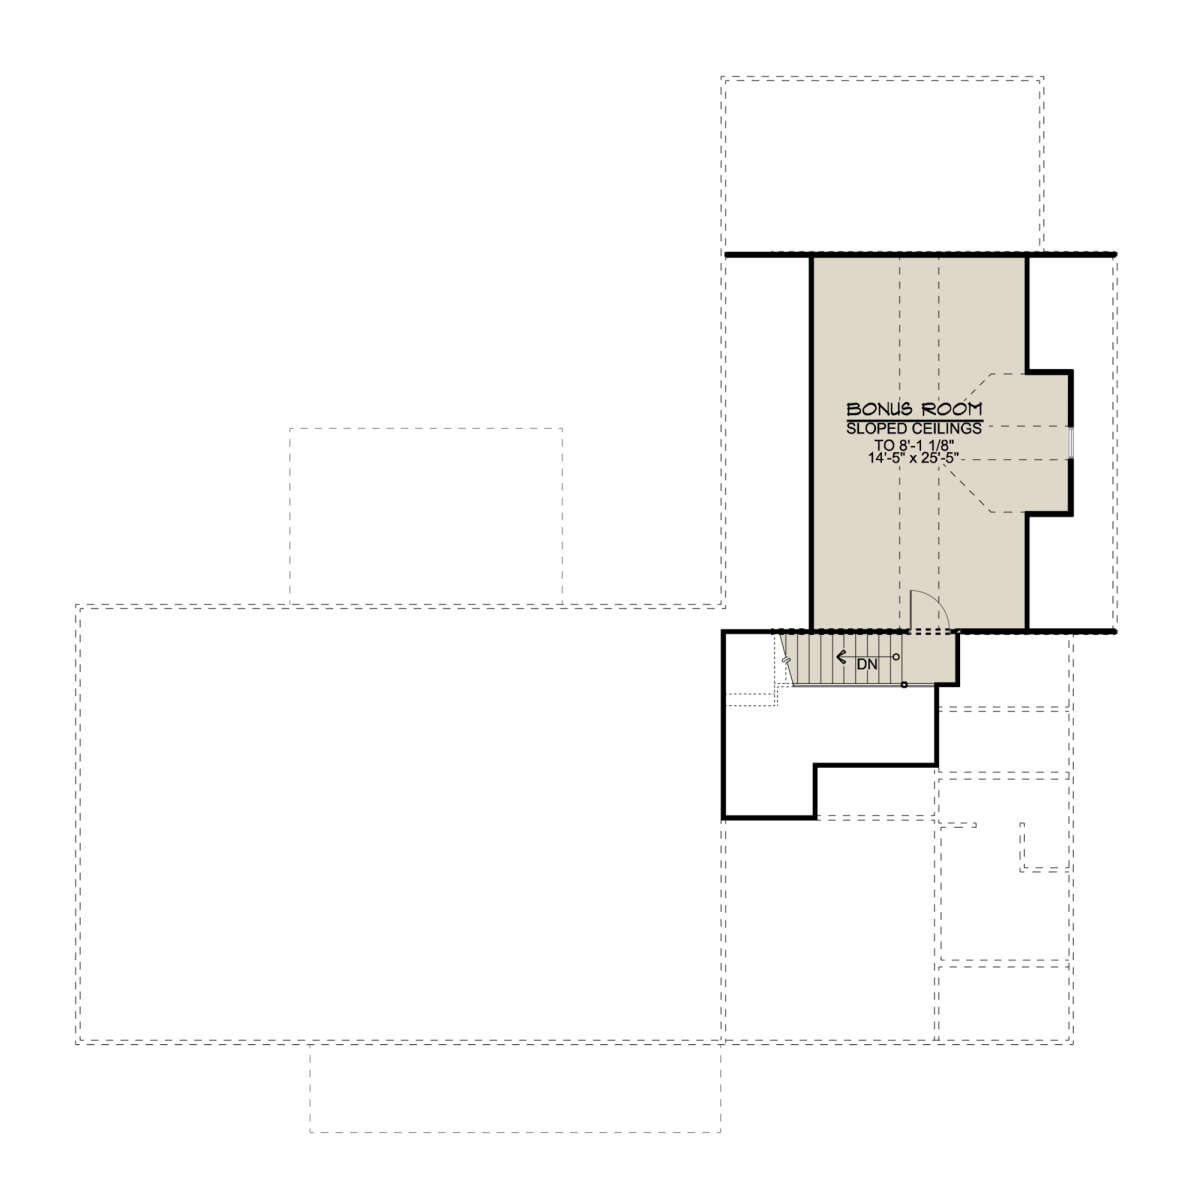 Bonus Room for House Plan #5032-00095